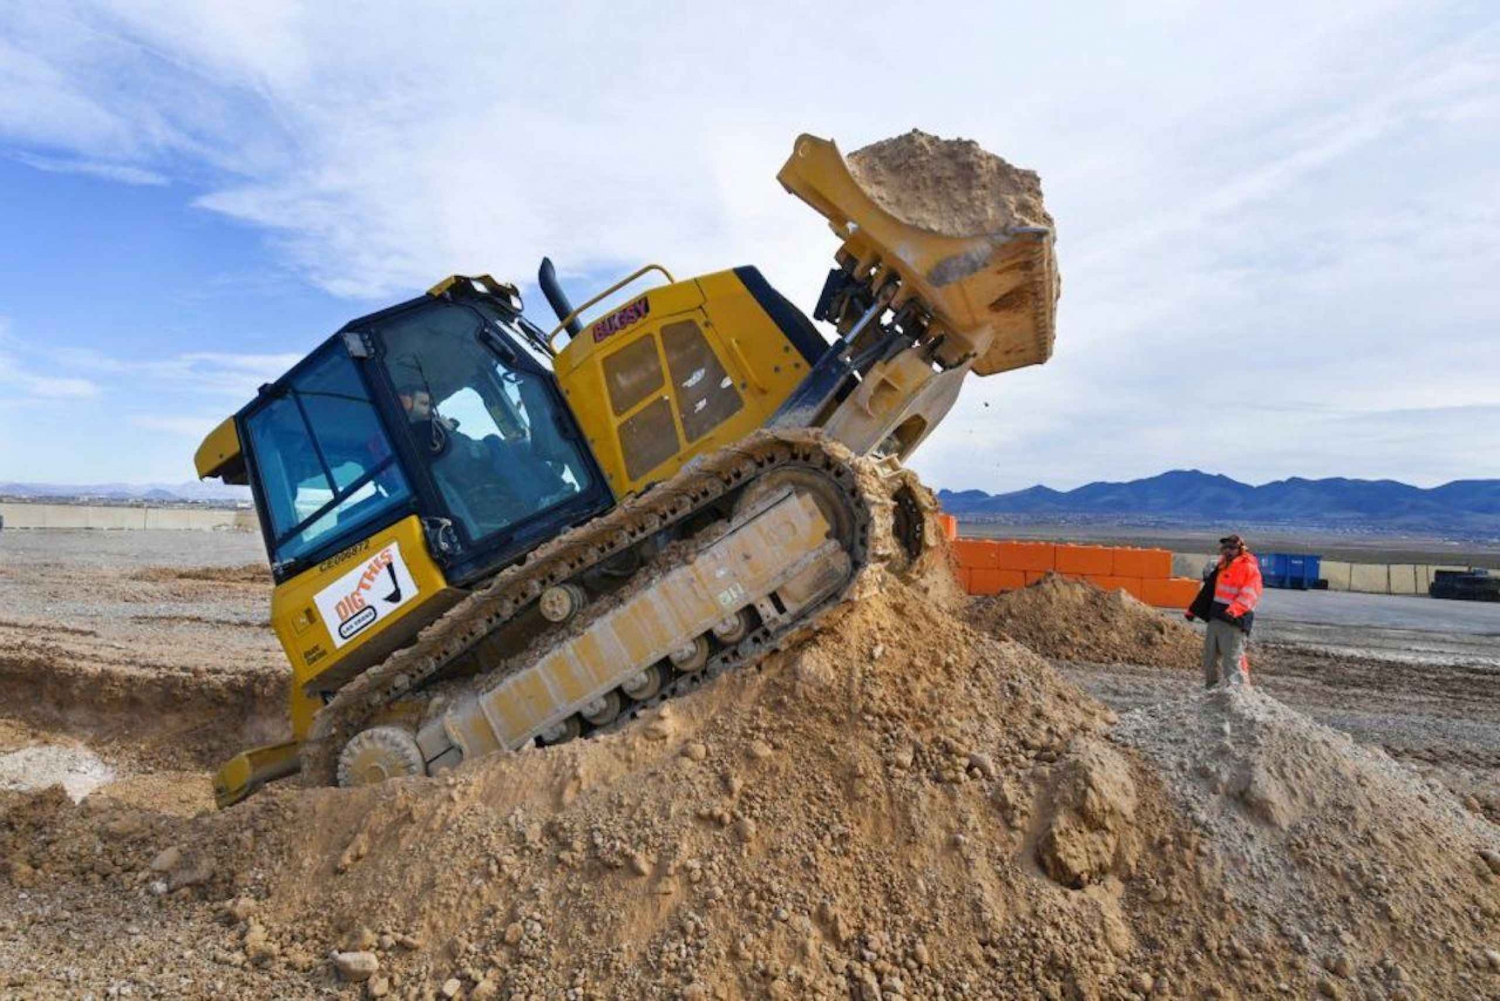 Las Vegas: Dig This - Speeltuin voor zwaar materieel